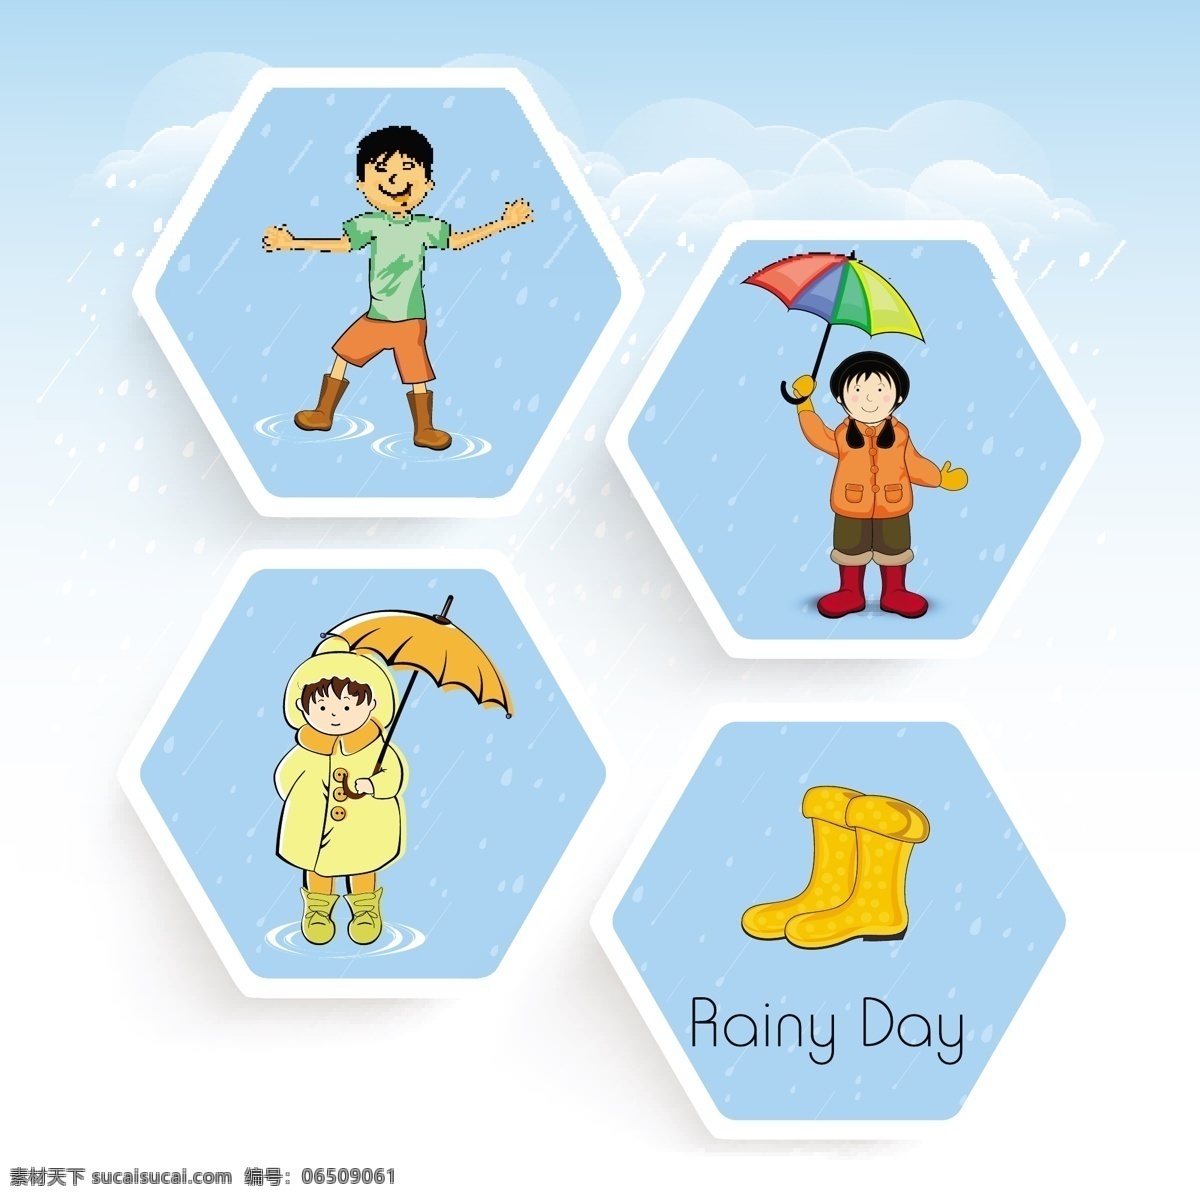 蓝色 天气 男孩 女孩 标签 模板下载 雨靴 雨伞 儿童幼儿 矢量人物 矢量素材 白色